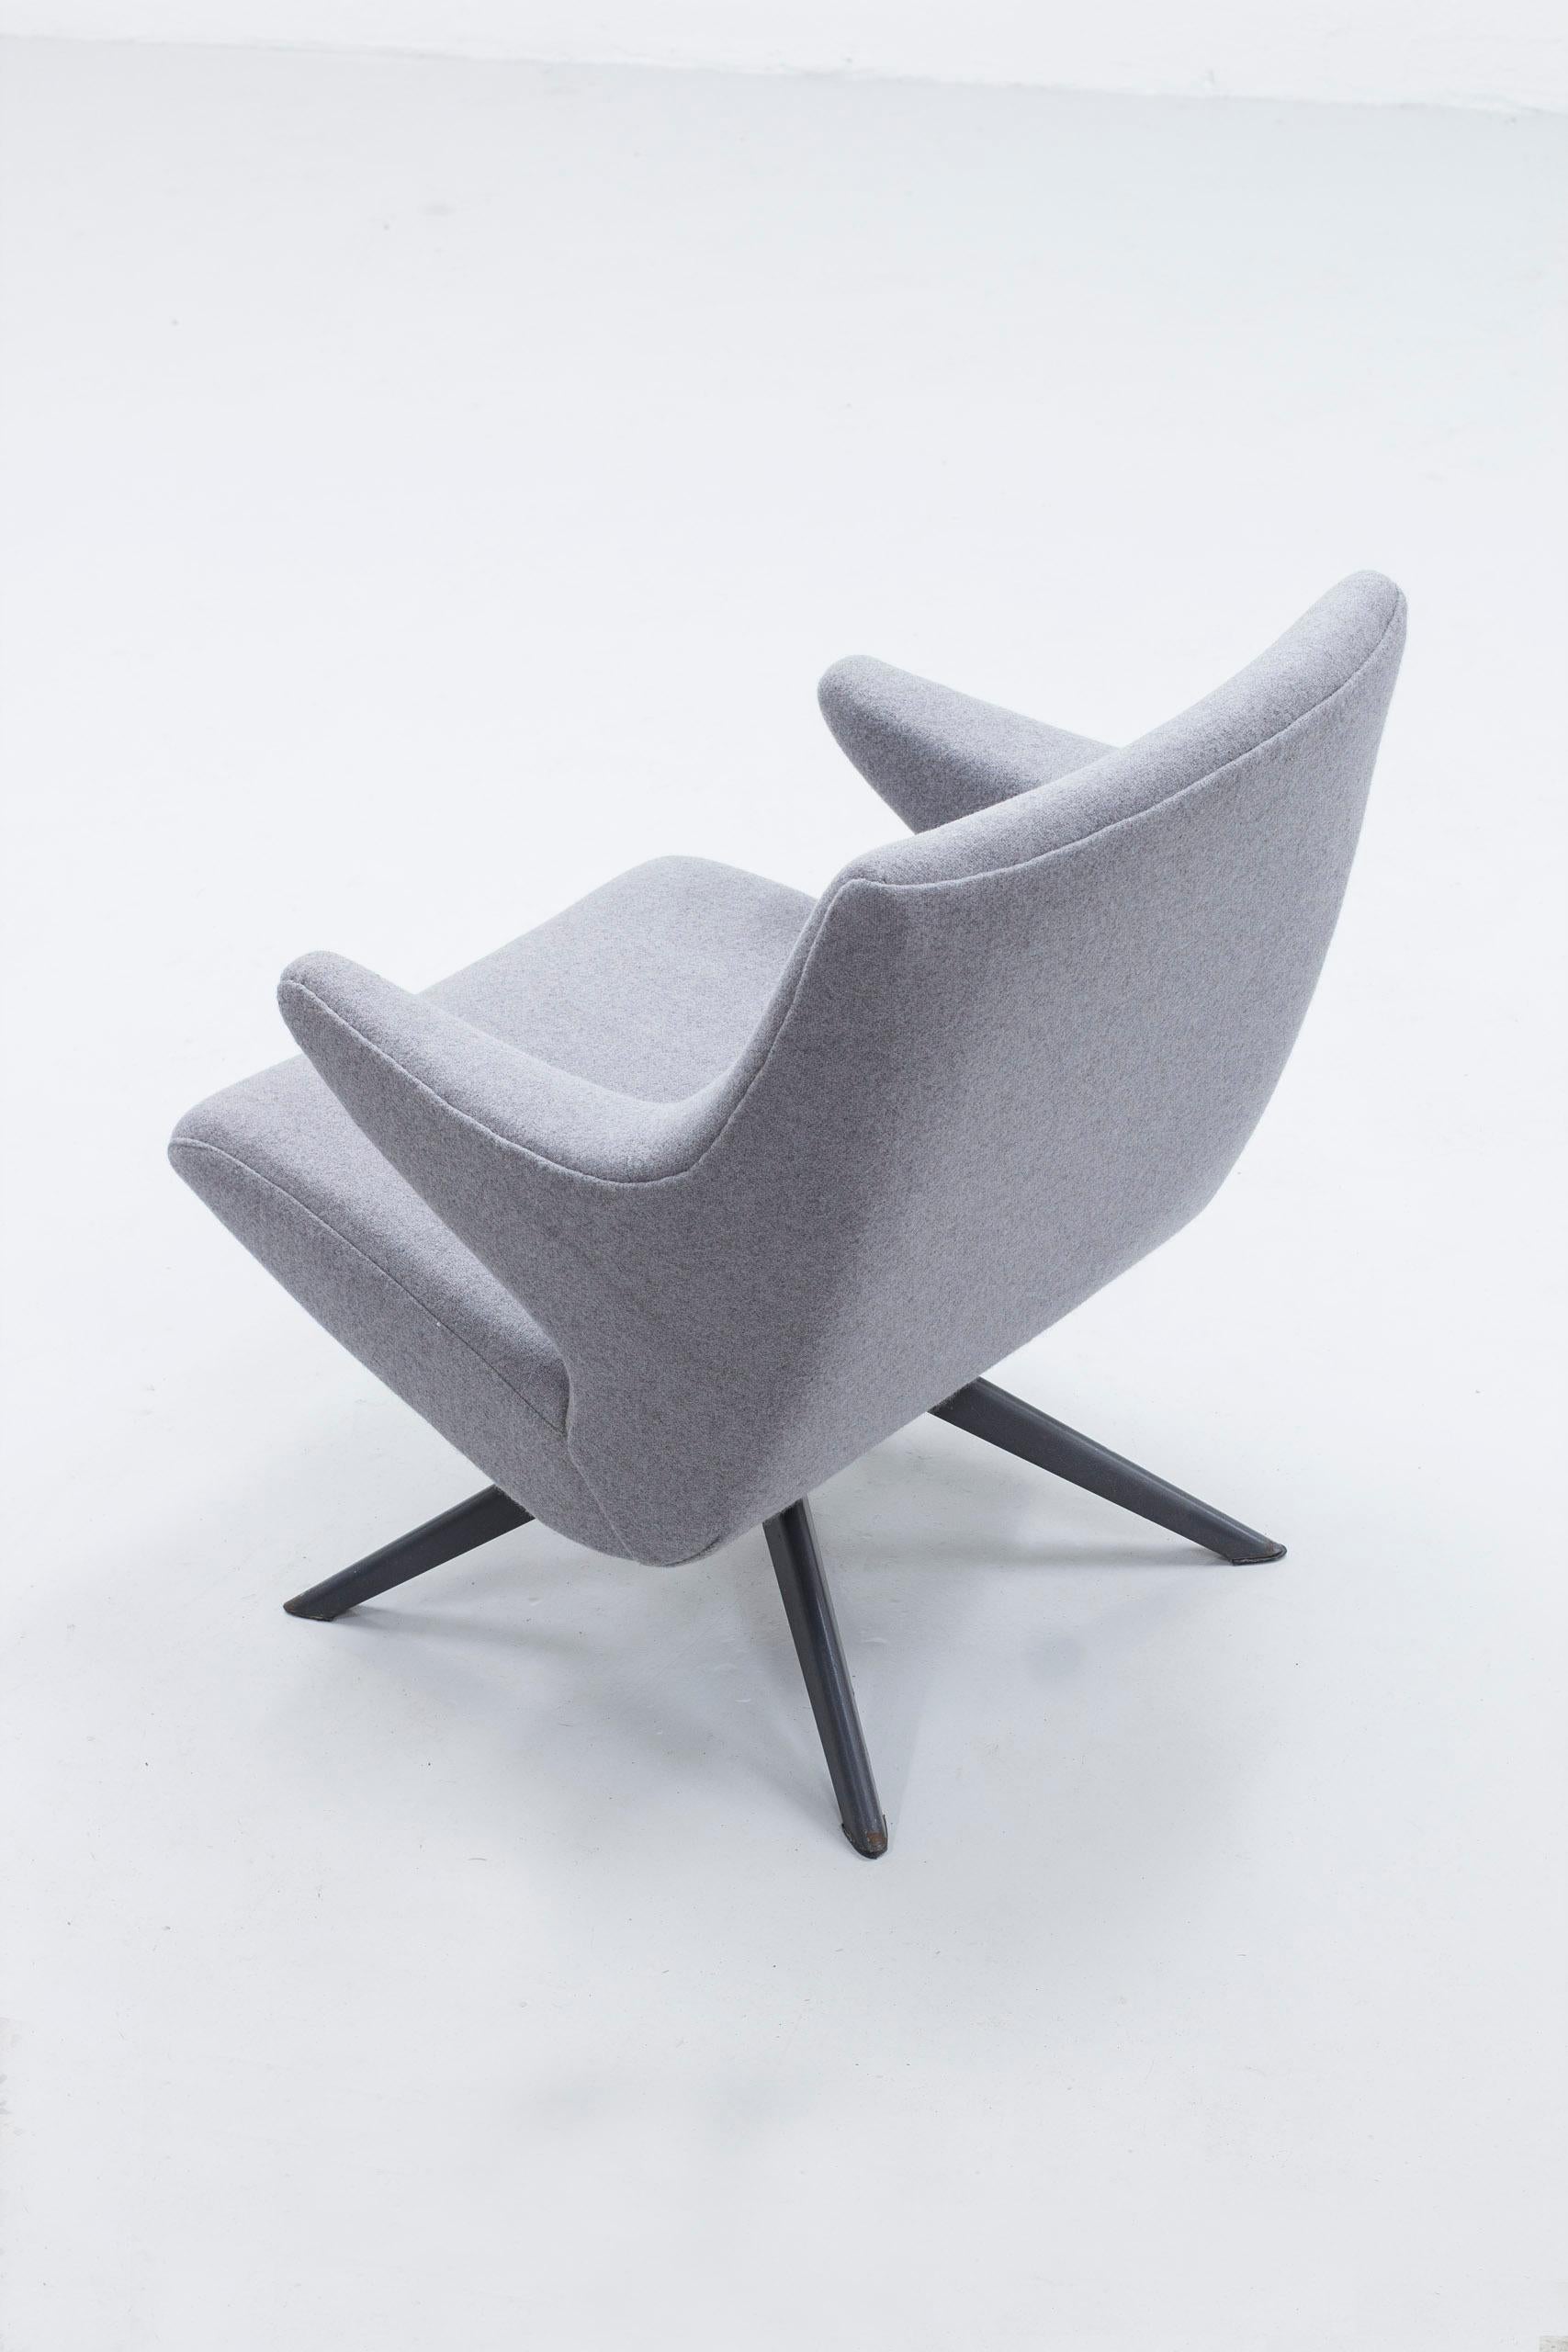 Scandinavian Modern Organic Lounge Chair by Bengt Ruda, Nordiska Kompaniet, Sweden, Ca 1955